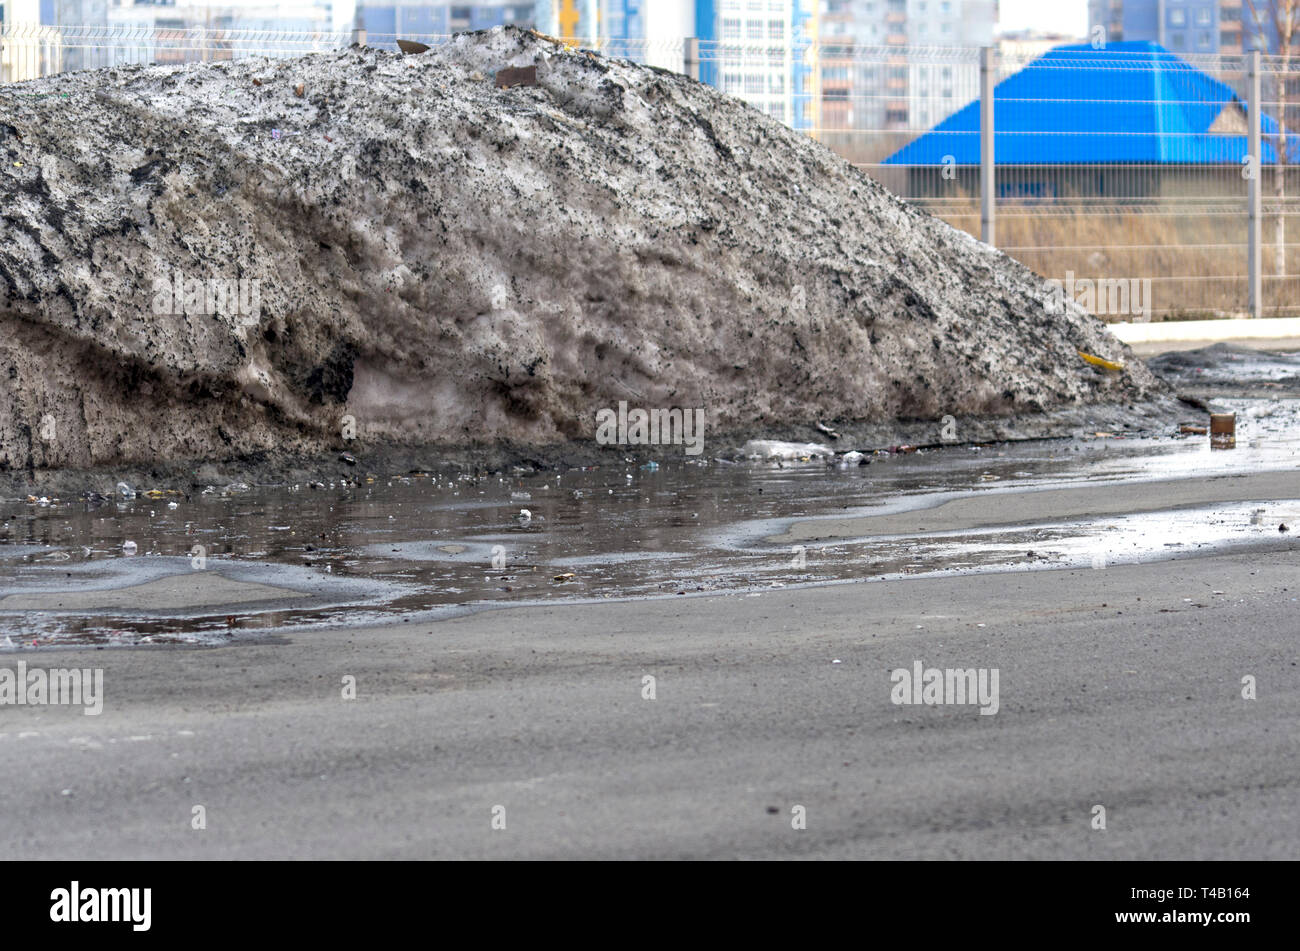 Gros tas de neige sale dans un parking de flaques et les débris recueillis au cours de l'hiver. Journée de printemps chaud Banque D'Images